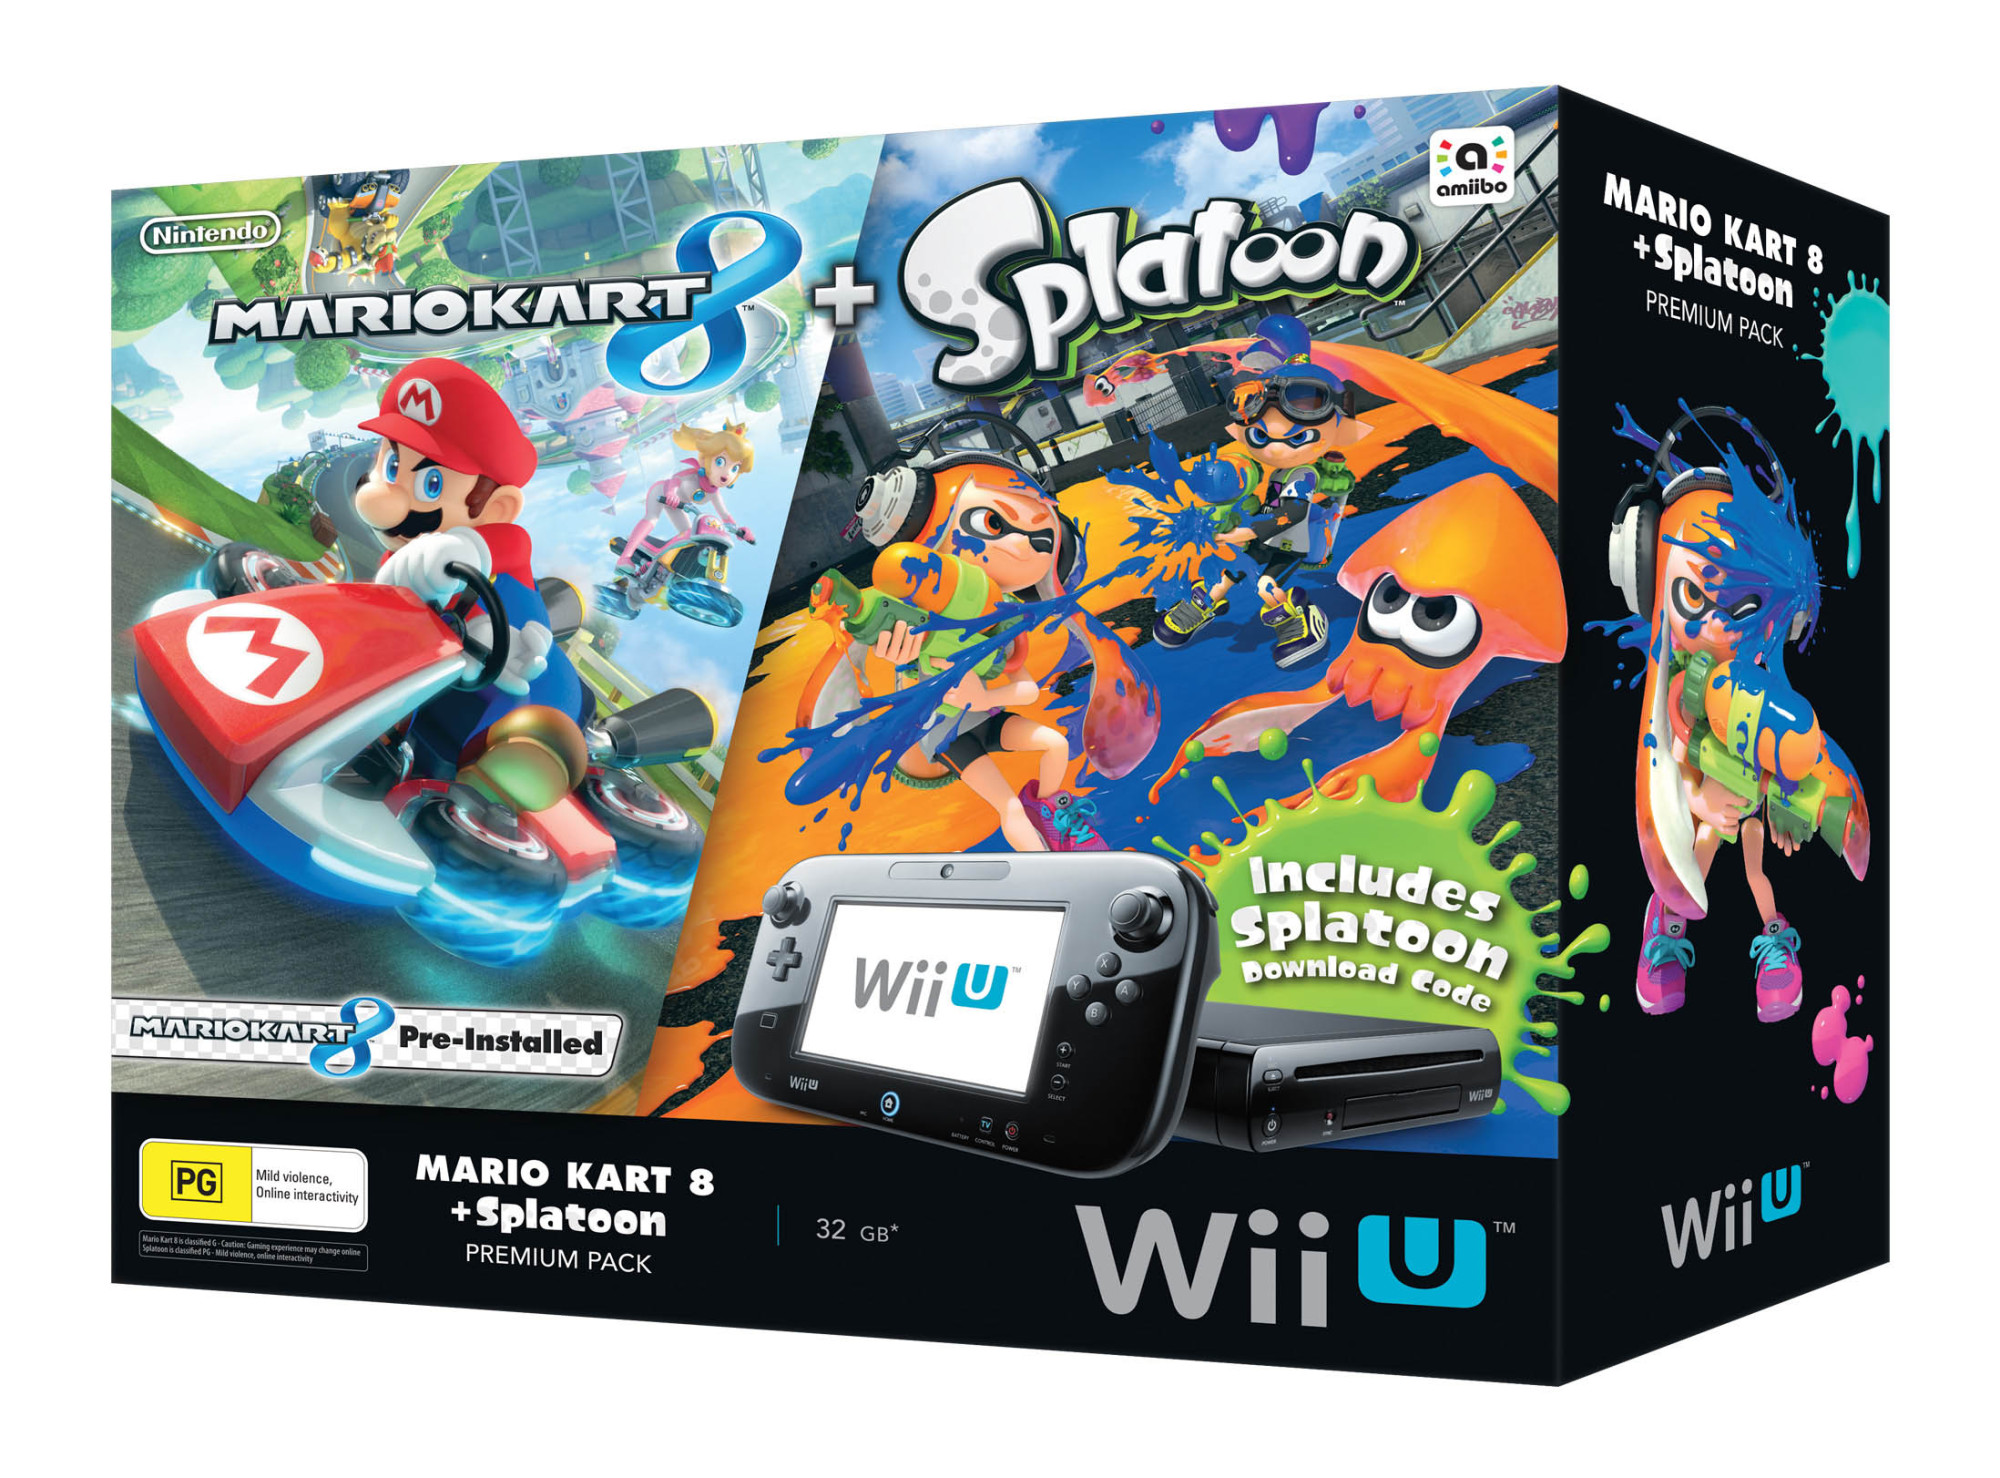 Mario Kart 8 Splatoon Wii U Premium Pack Vooks 8791